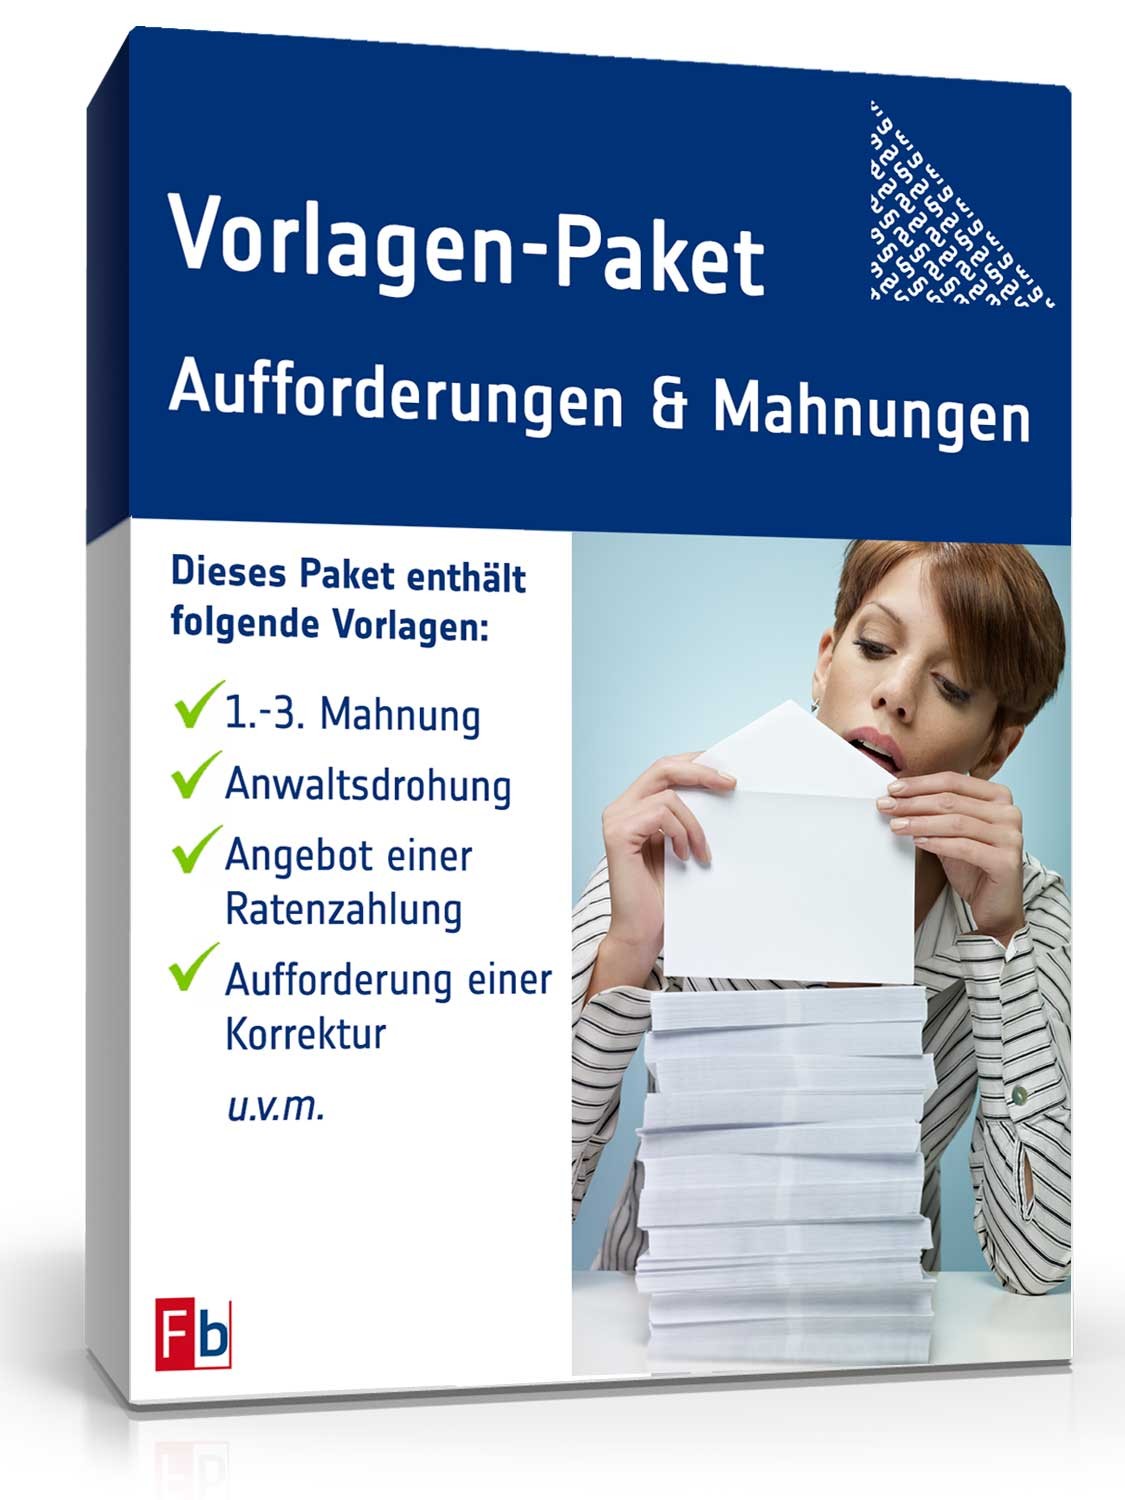 Vorlagen-Paket Aufforderungen & Mahnungen | Vorlagen zum ...